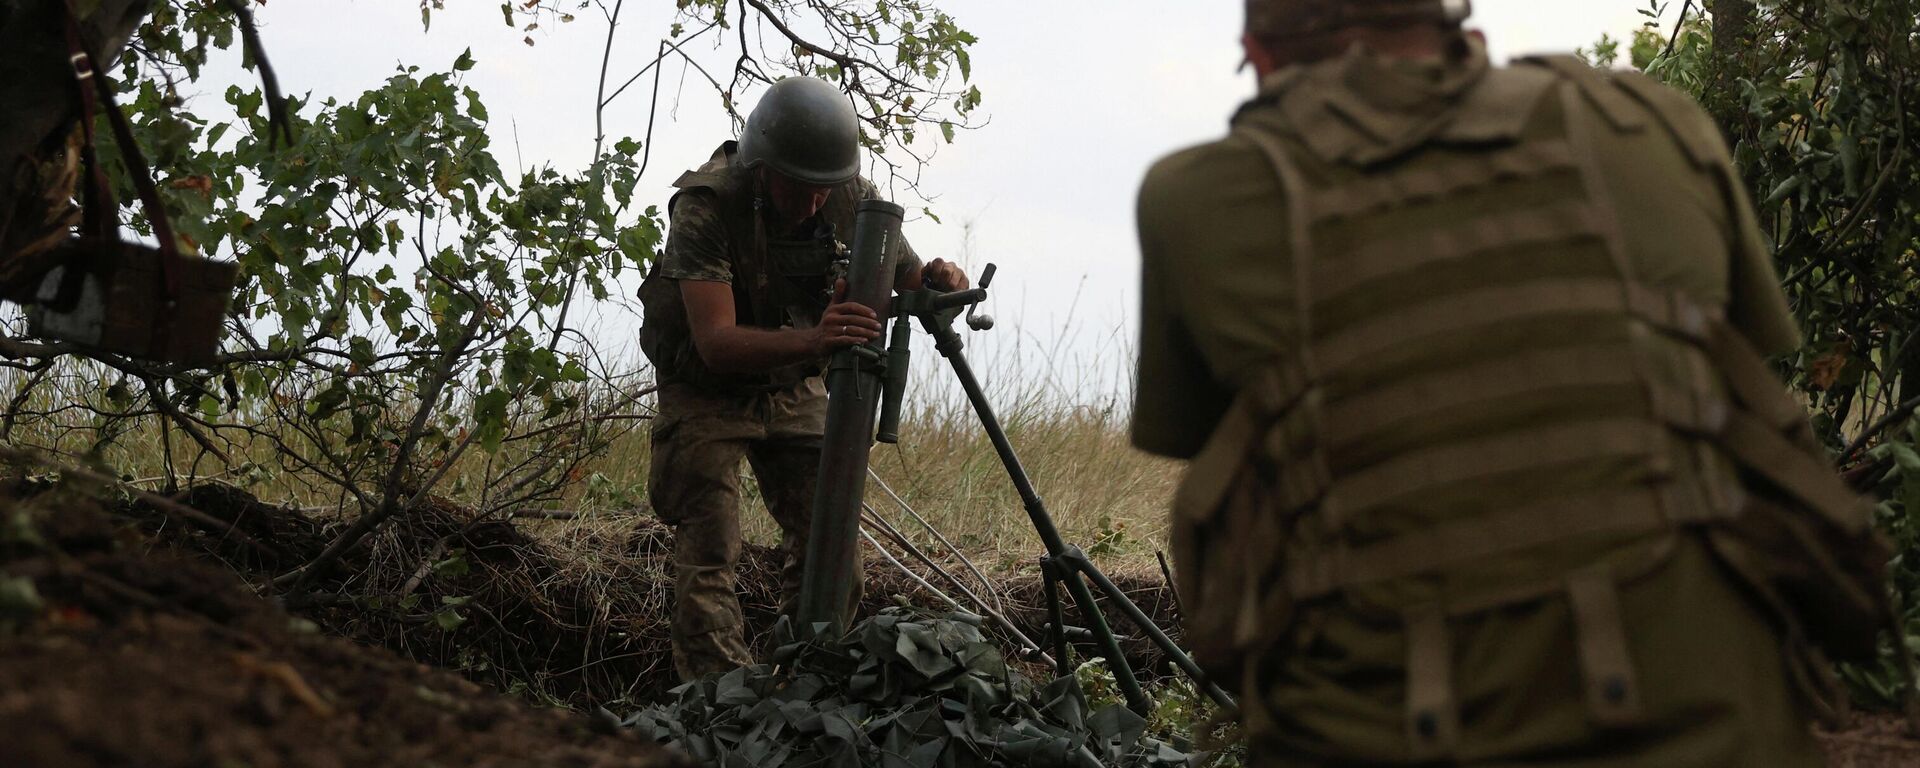 Soldados ucranianos se preparam para lançar morteiro na linha de frente, na região de Donetsk - Sputnik Brasil, 1920, 12.09.2022